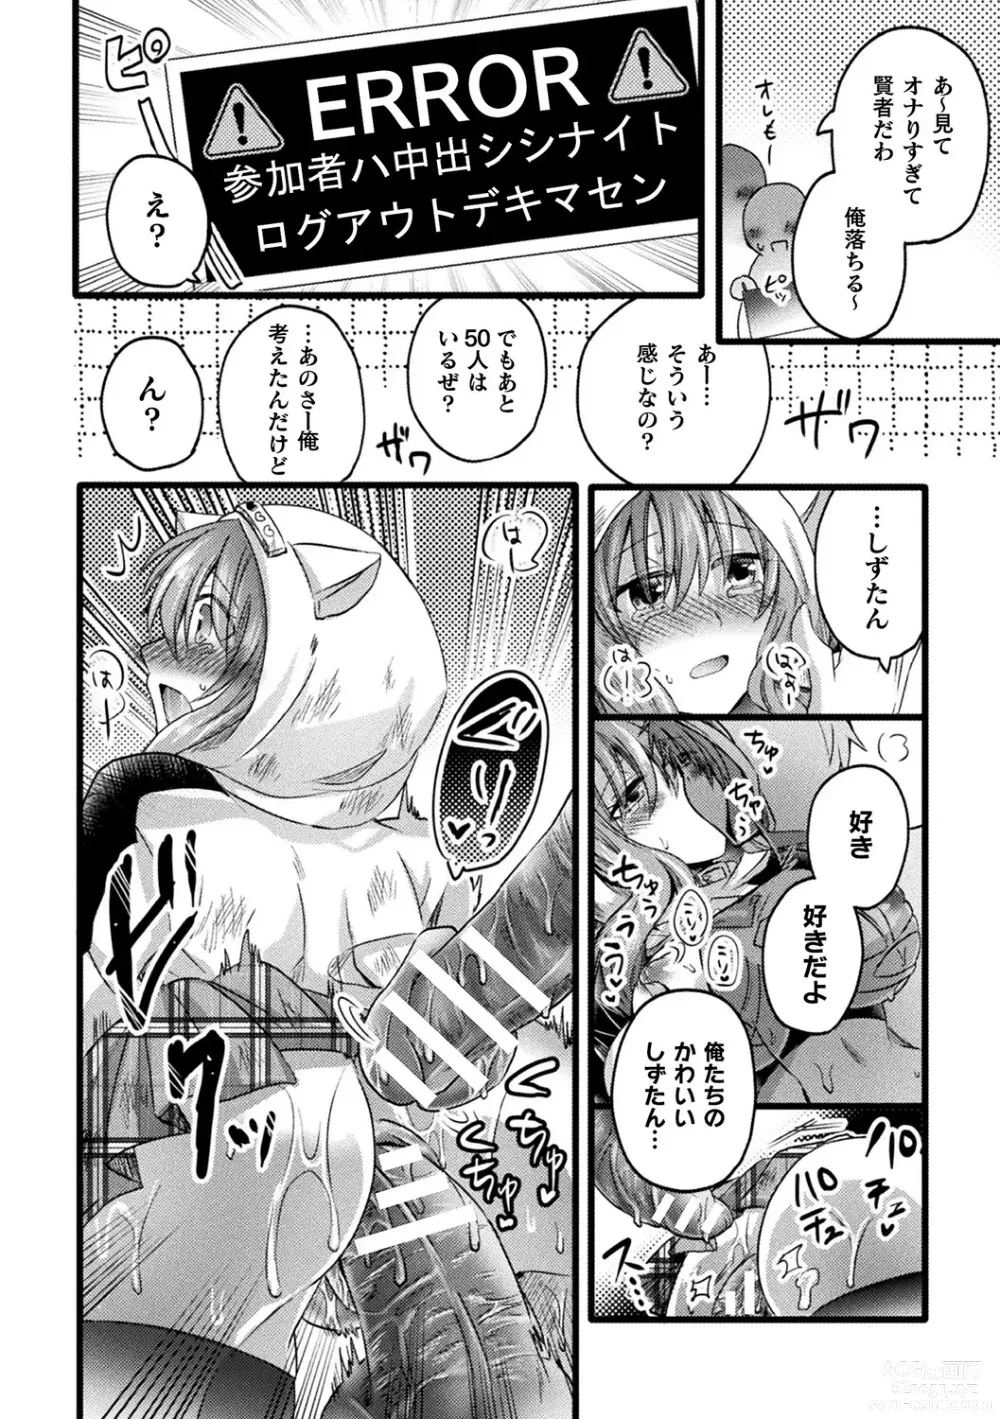 Page 82 of manga Bessatsu Comic Unreal AI ni Wakaraserareru Jinrui Hen Vol. 2